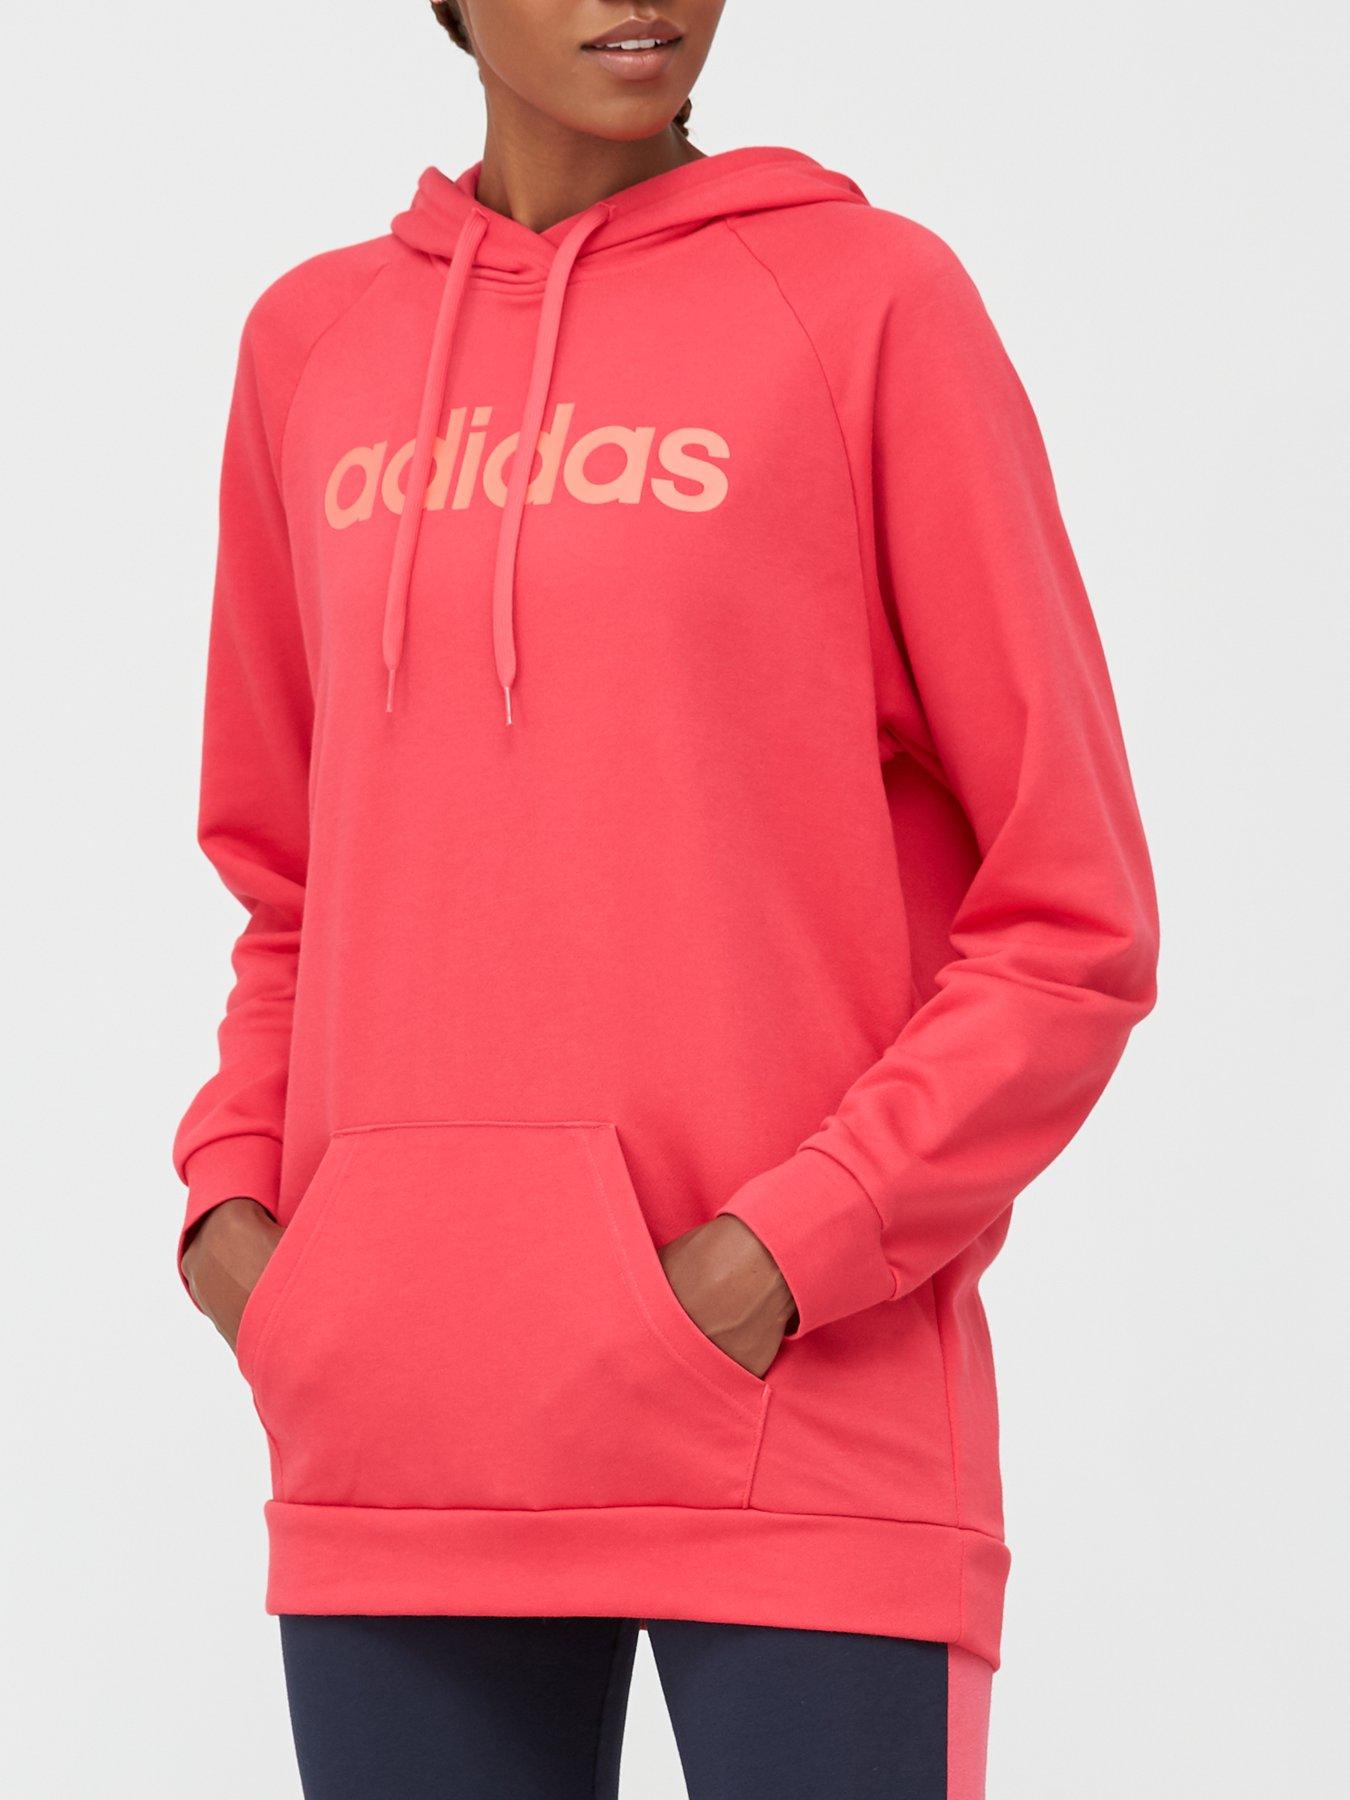 adidas leggings and hoodie